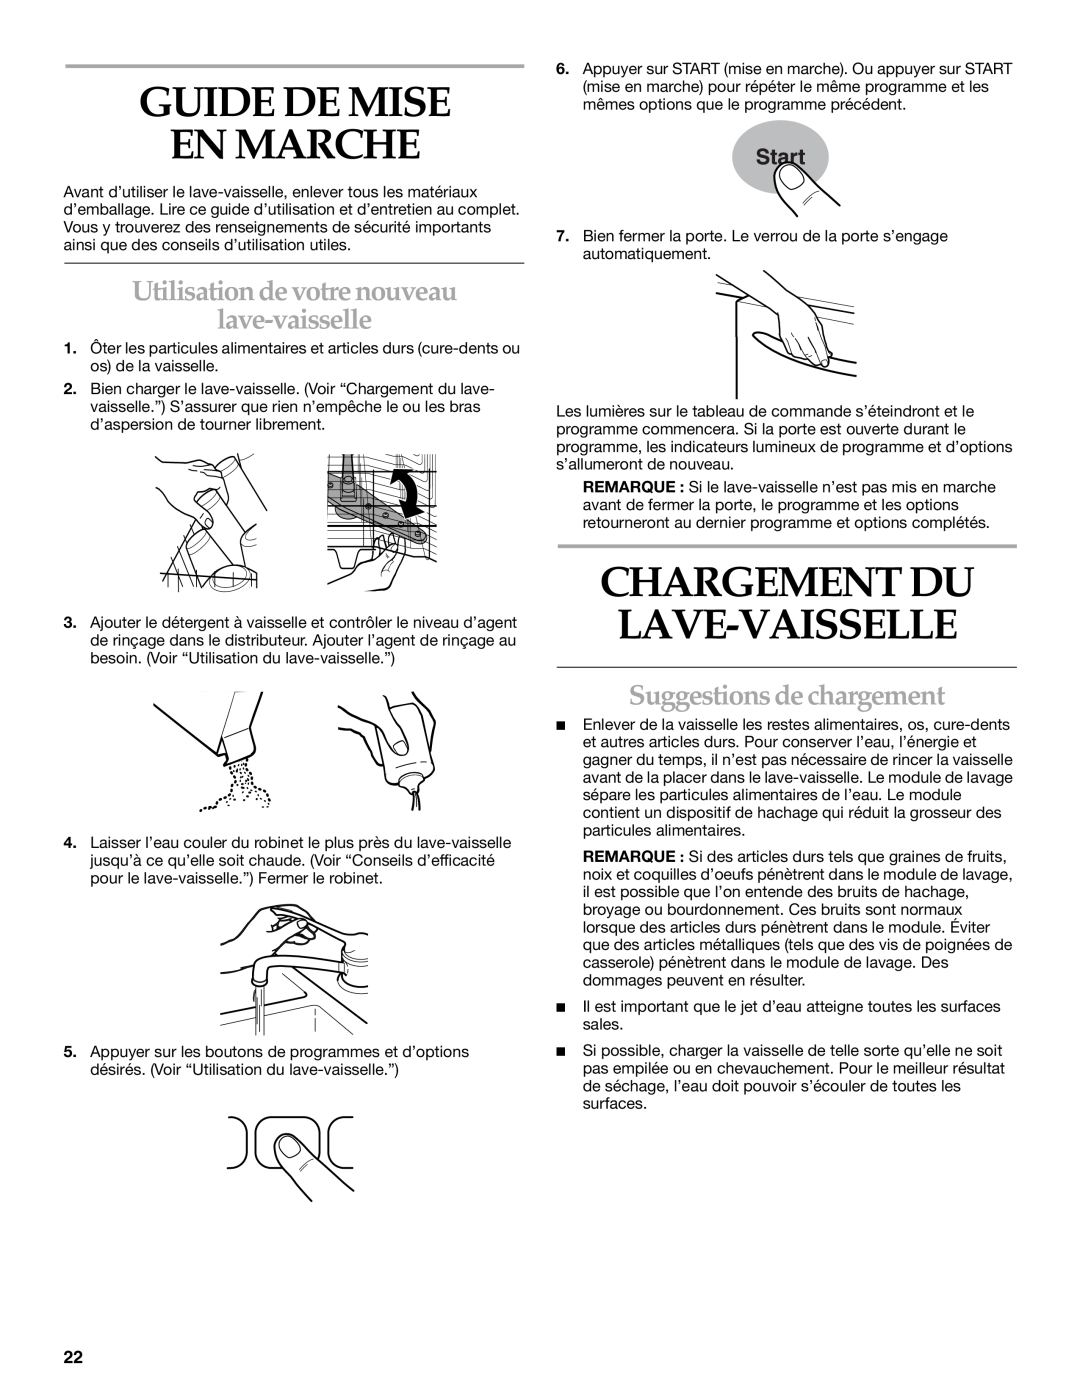 KitchenAid KUDI01FK manual Guide De Mise En Marche, Utilisation de votre nouveau lave-vaisselle, Suggestions de chargement 